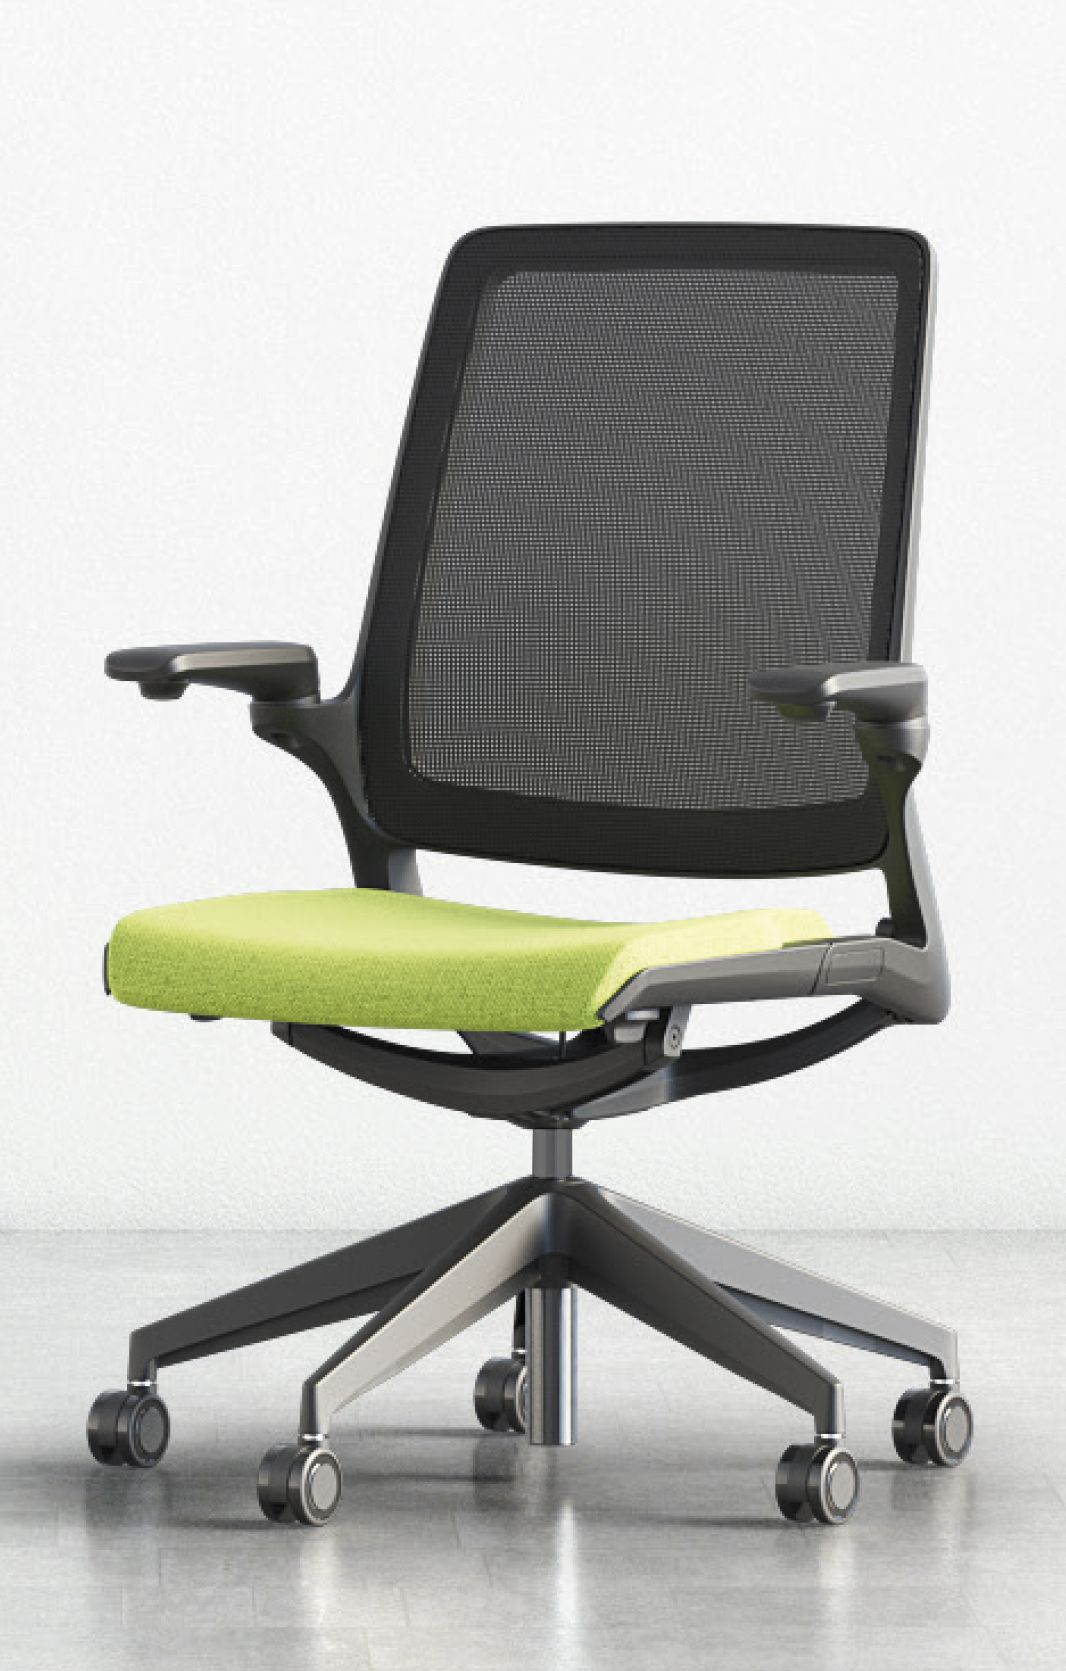 Fotel biurowy SMART SB10N atest wytrzymałości do 200 kg/atest do pracy 24/7